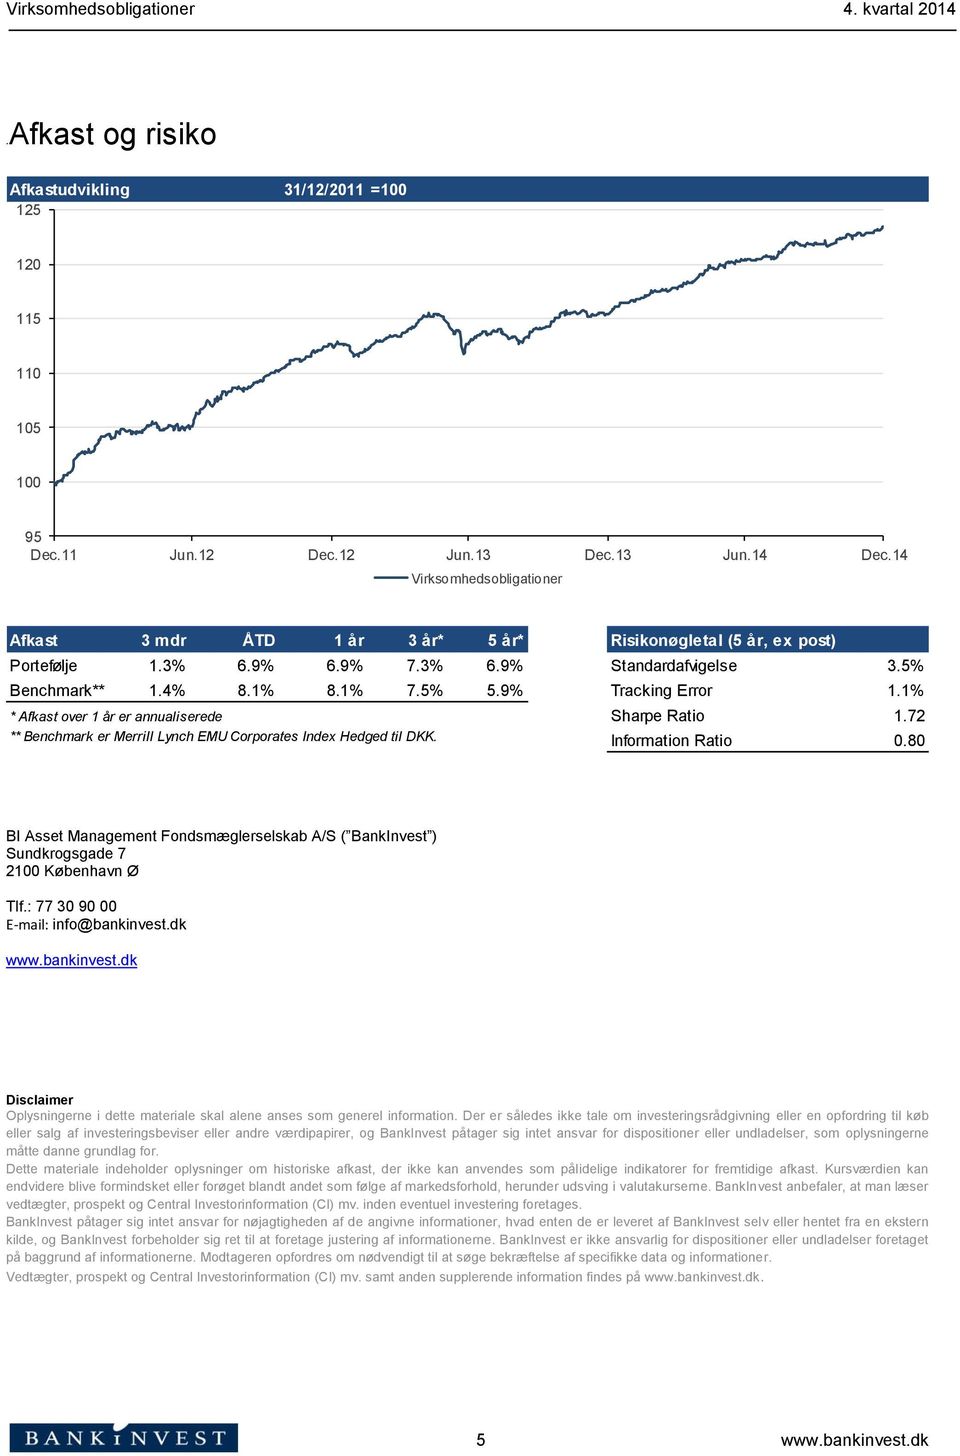 9% Tracking Error 1.1% * Afkast over 1 år er annualiserede Sharpe Ratio 1.72 ** Benchmark er Merrill Lynch EMU Corporates Index Hedged til DKK. Information Ratio 0.